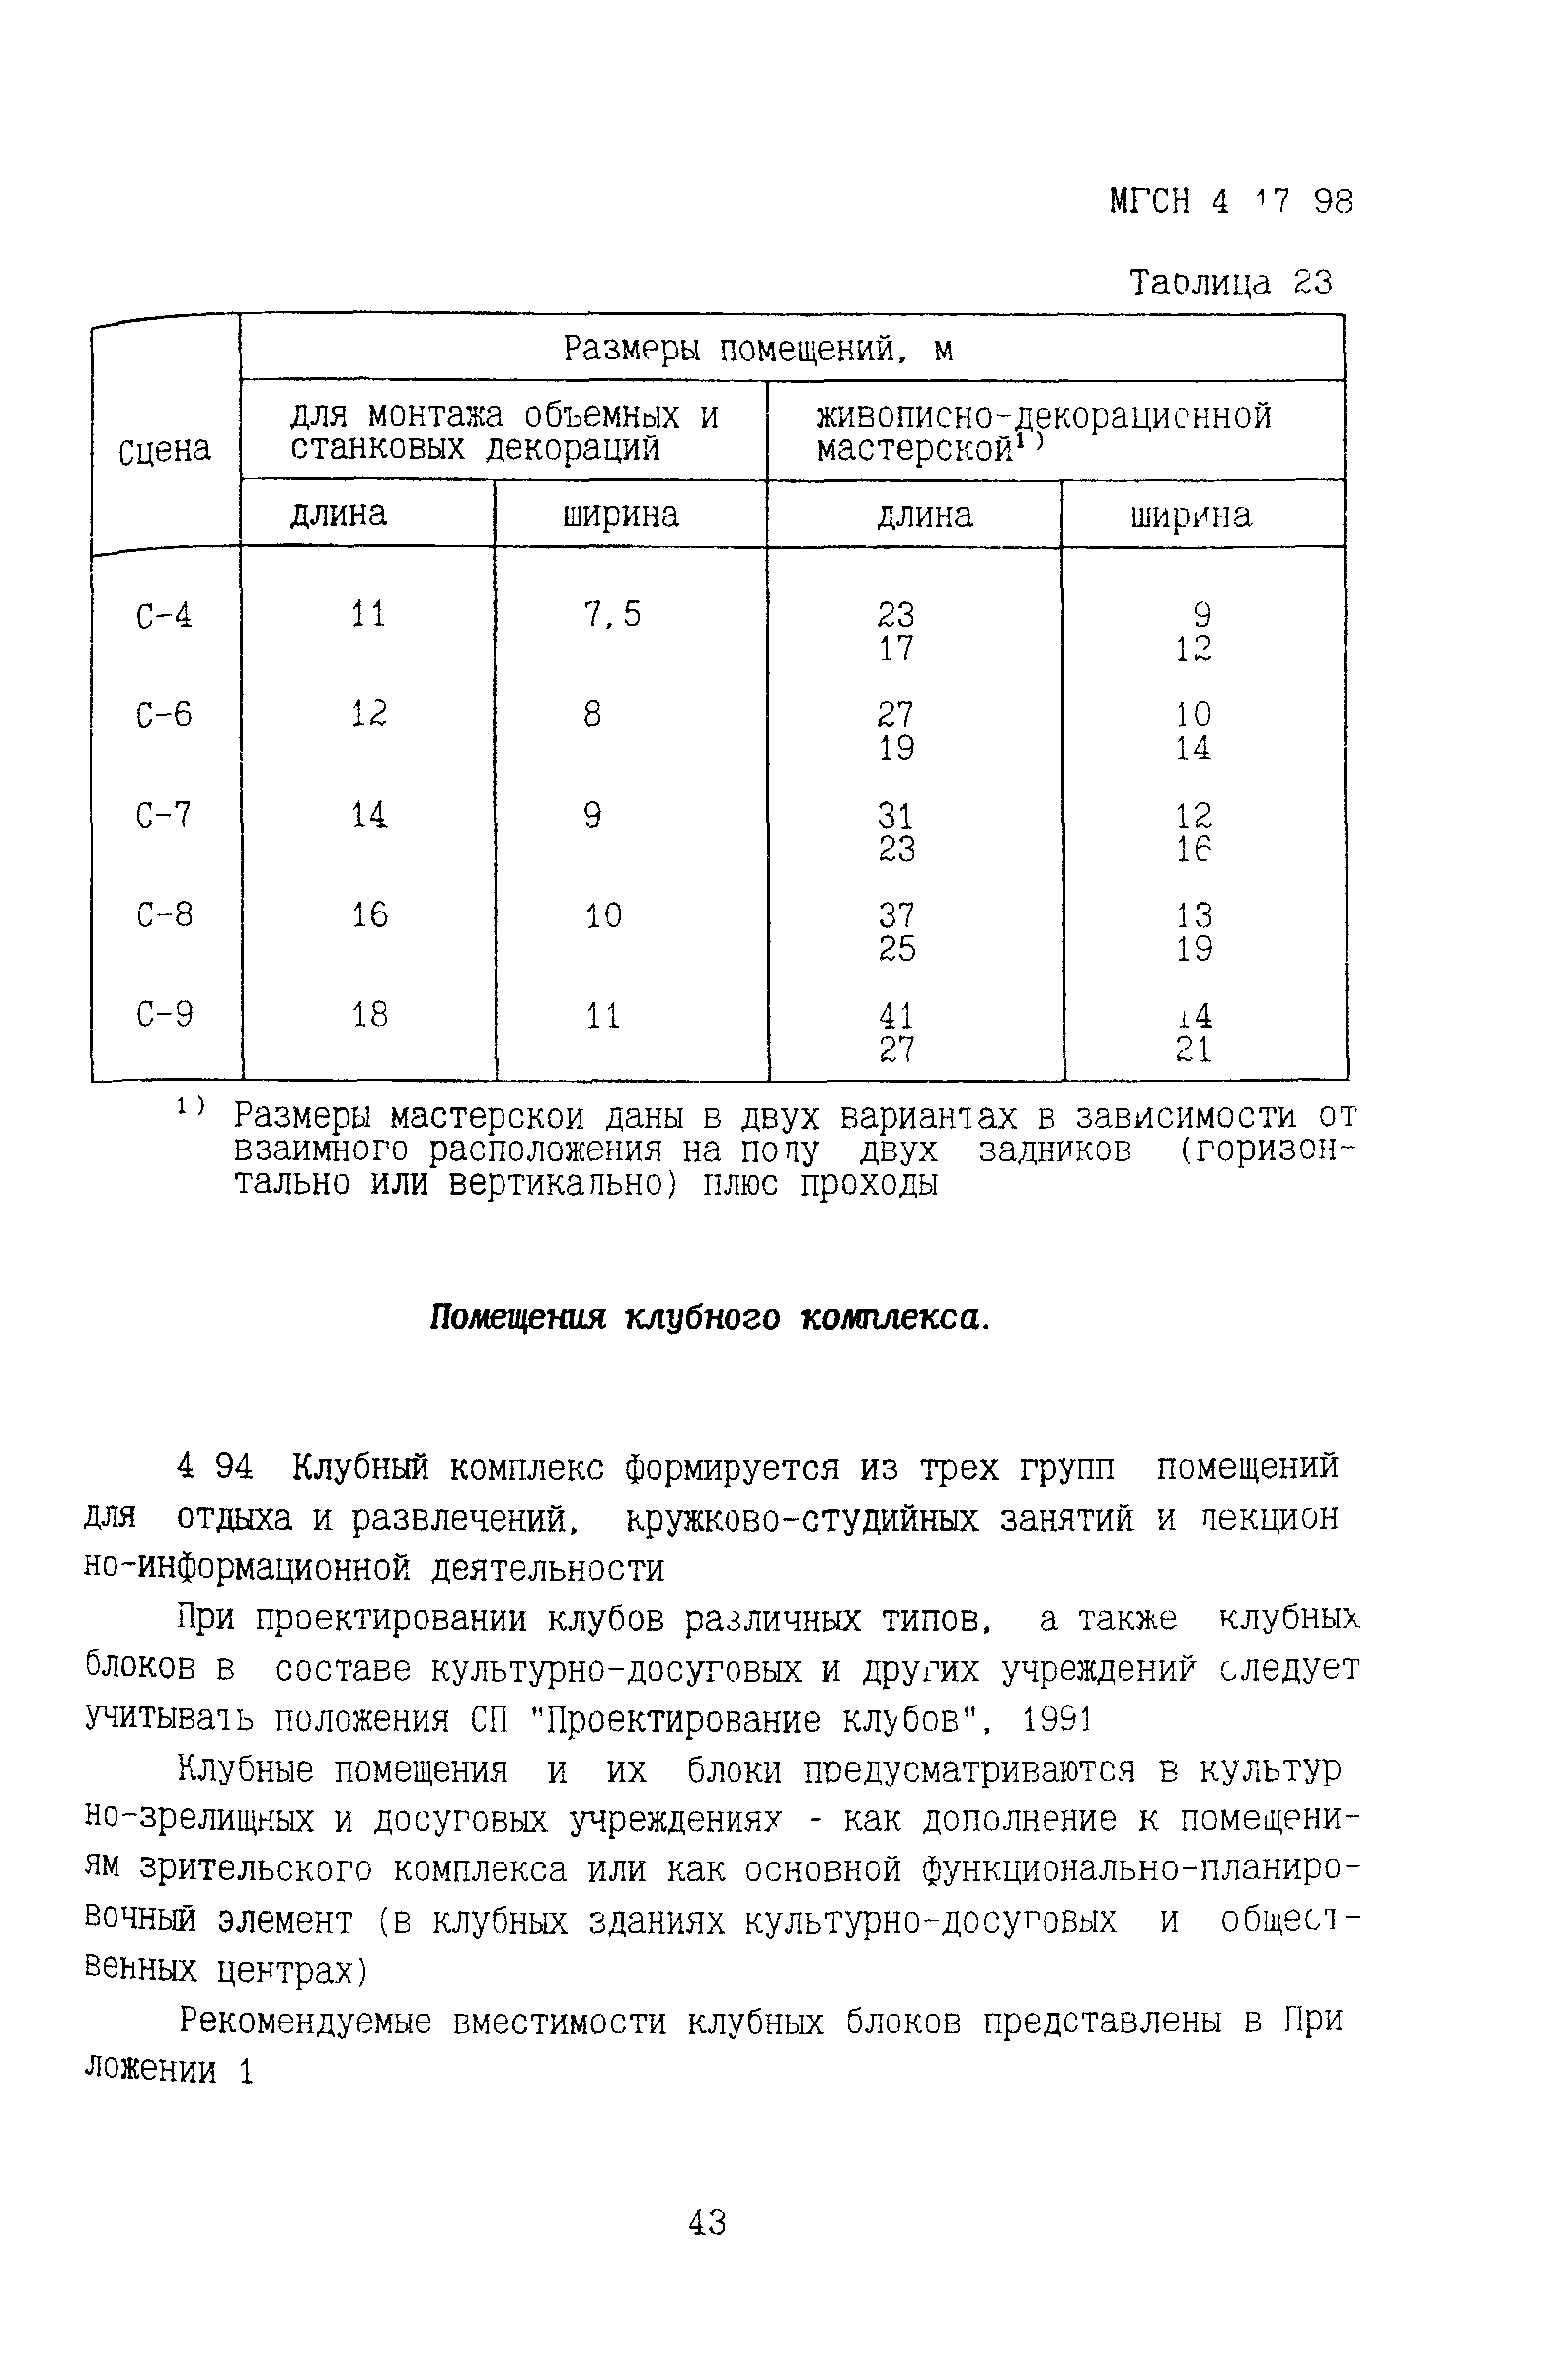 ТСН 31-317-99